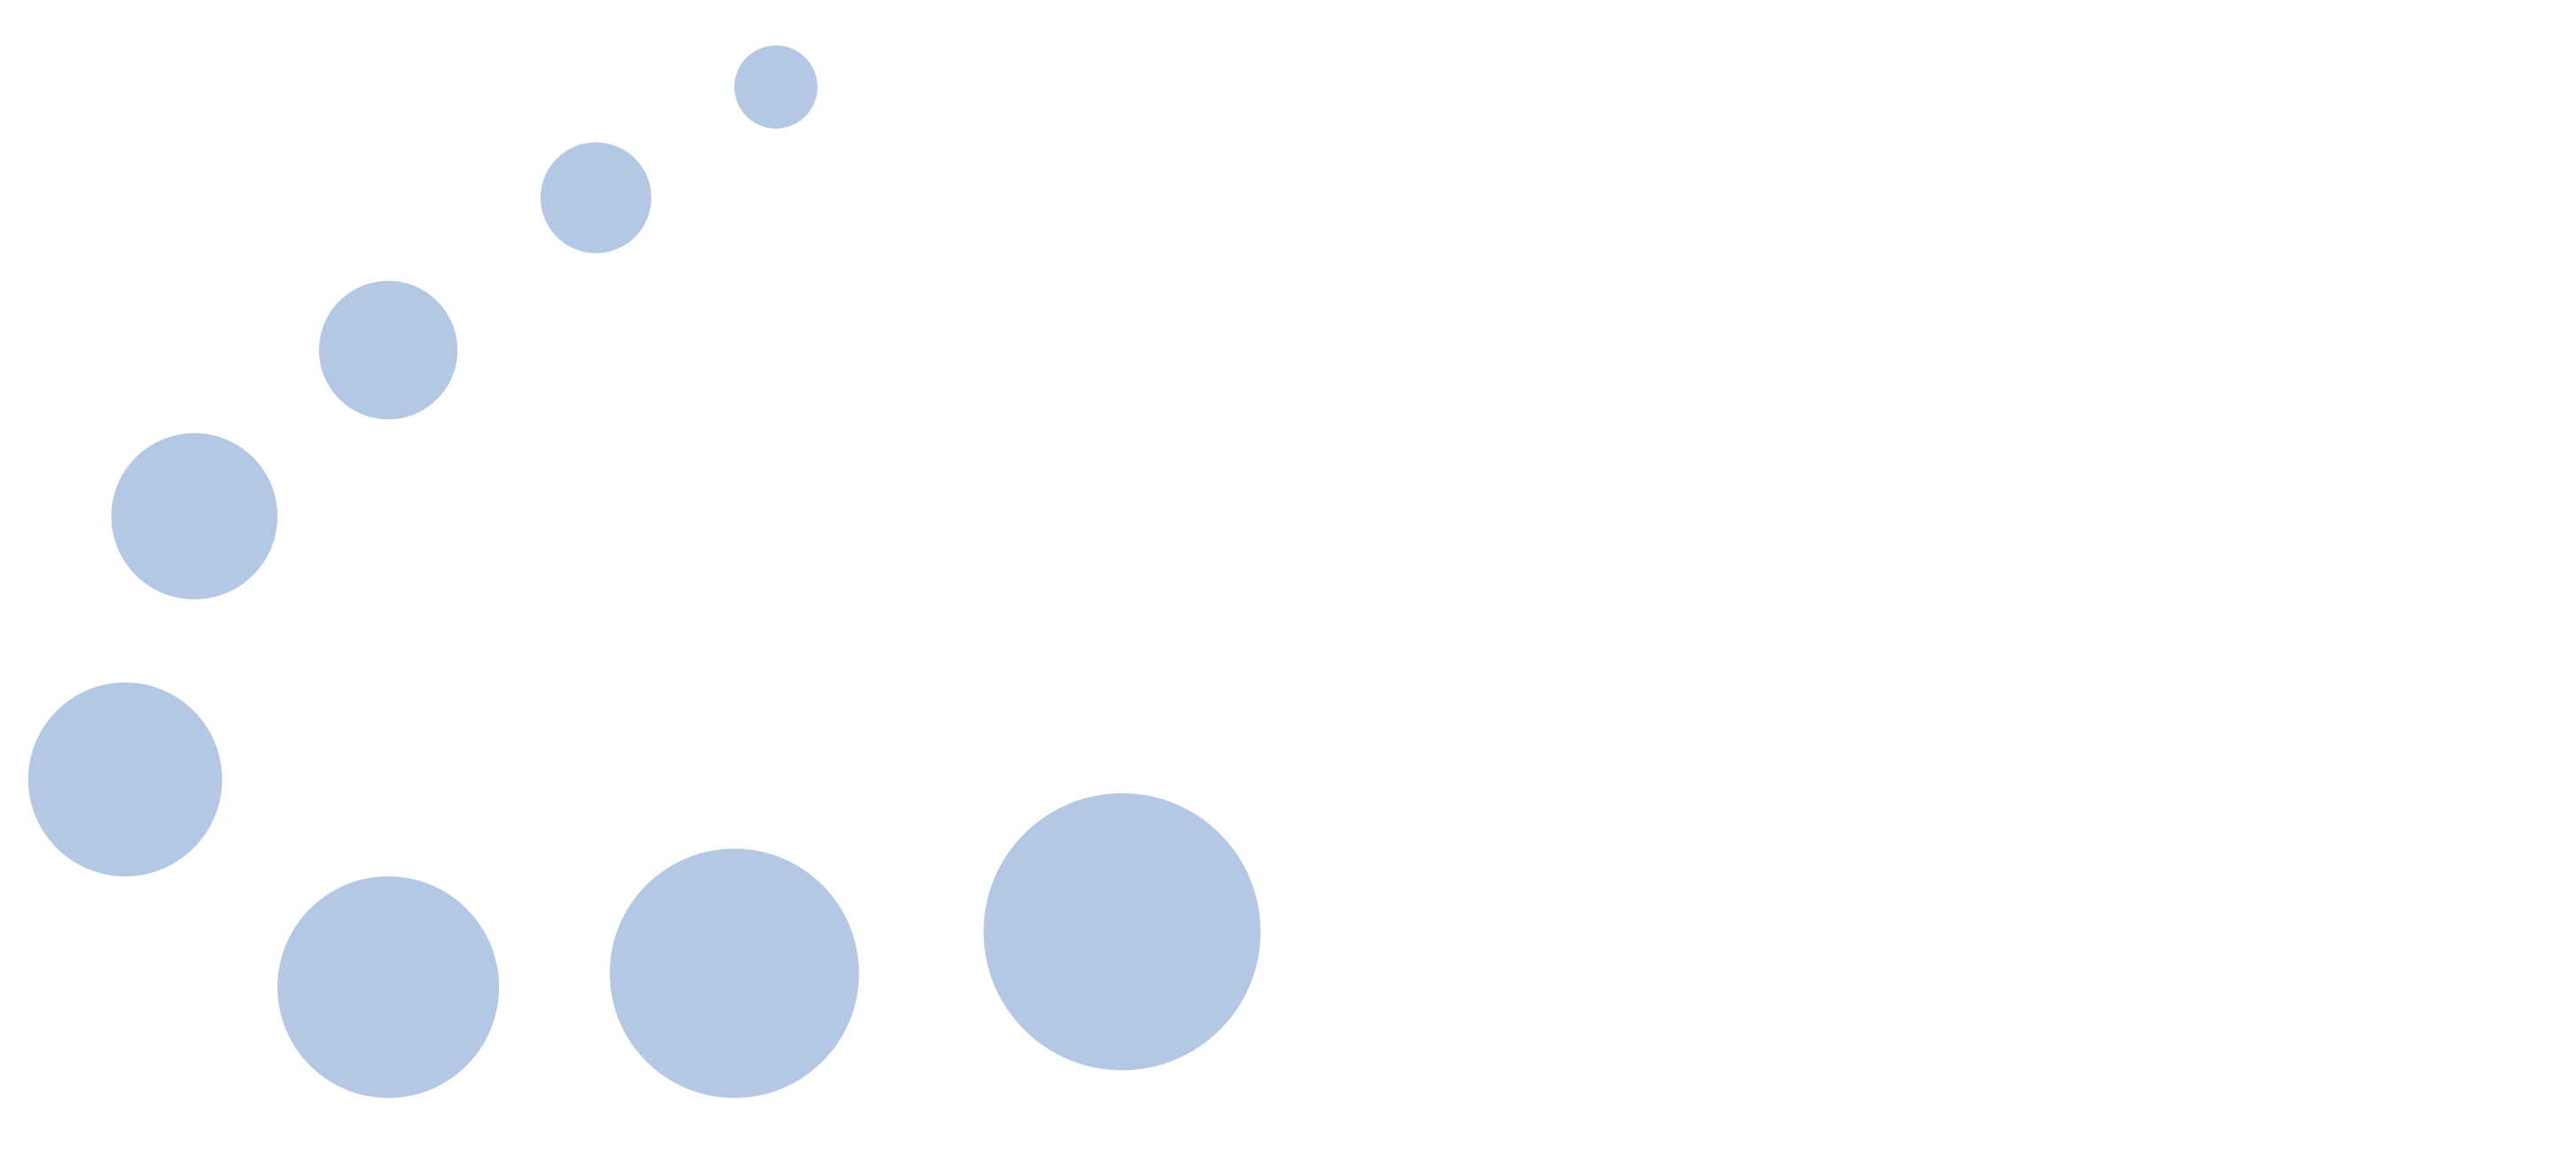 APIDIM